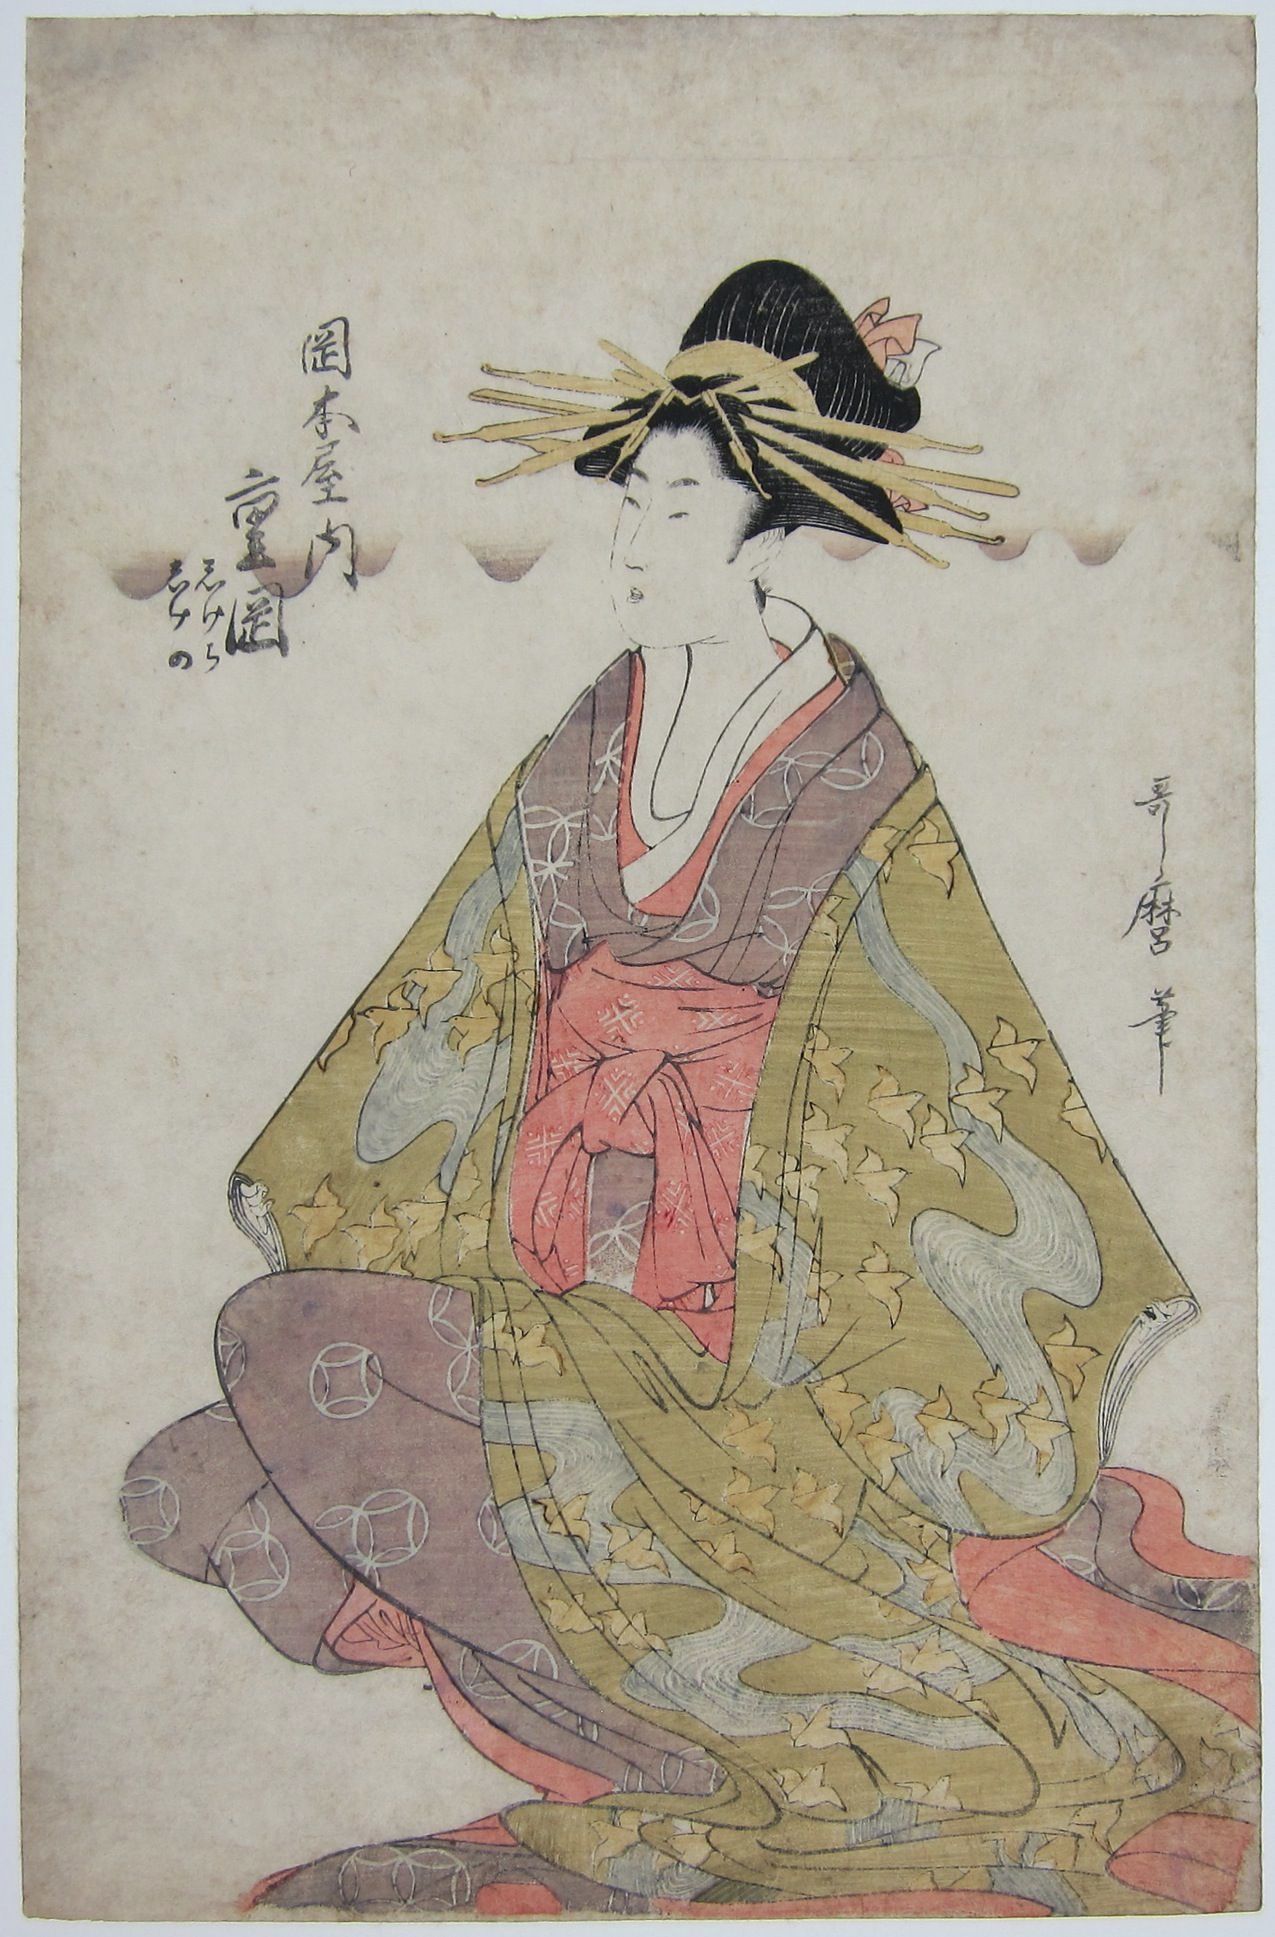 The Courtesan Shigeoka of the Okamoto-ya. c.1810-20